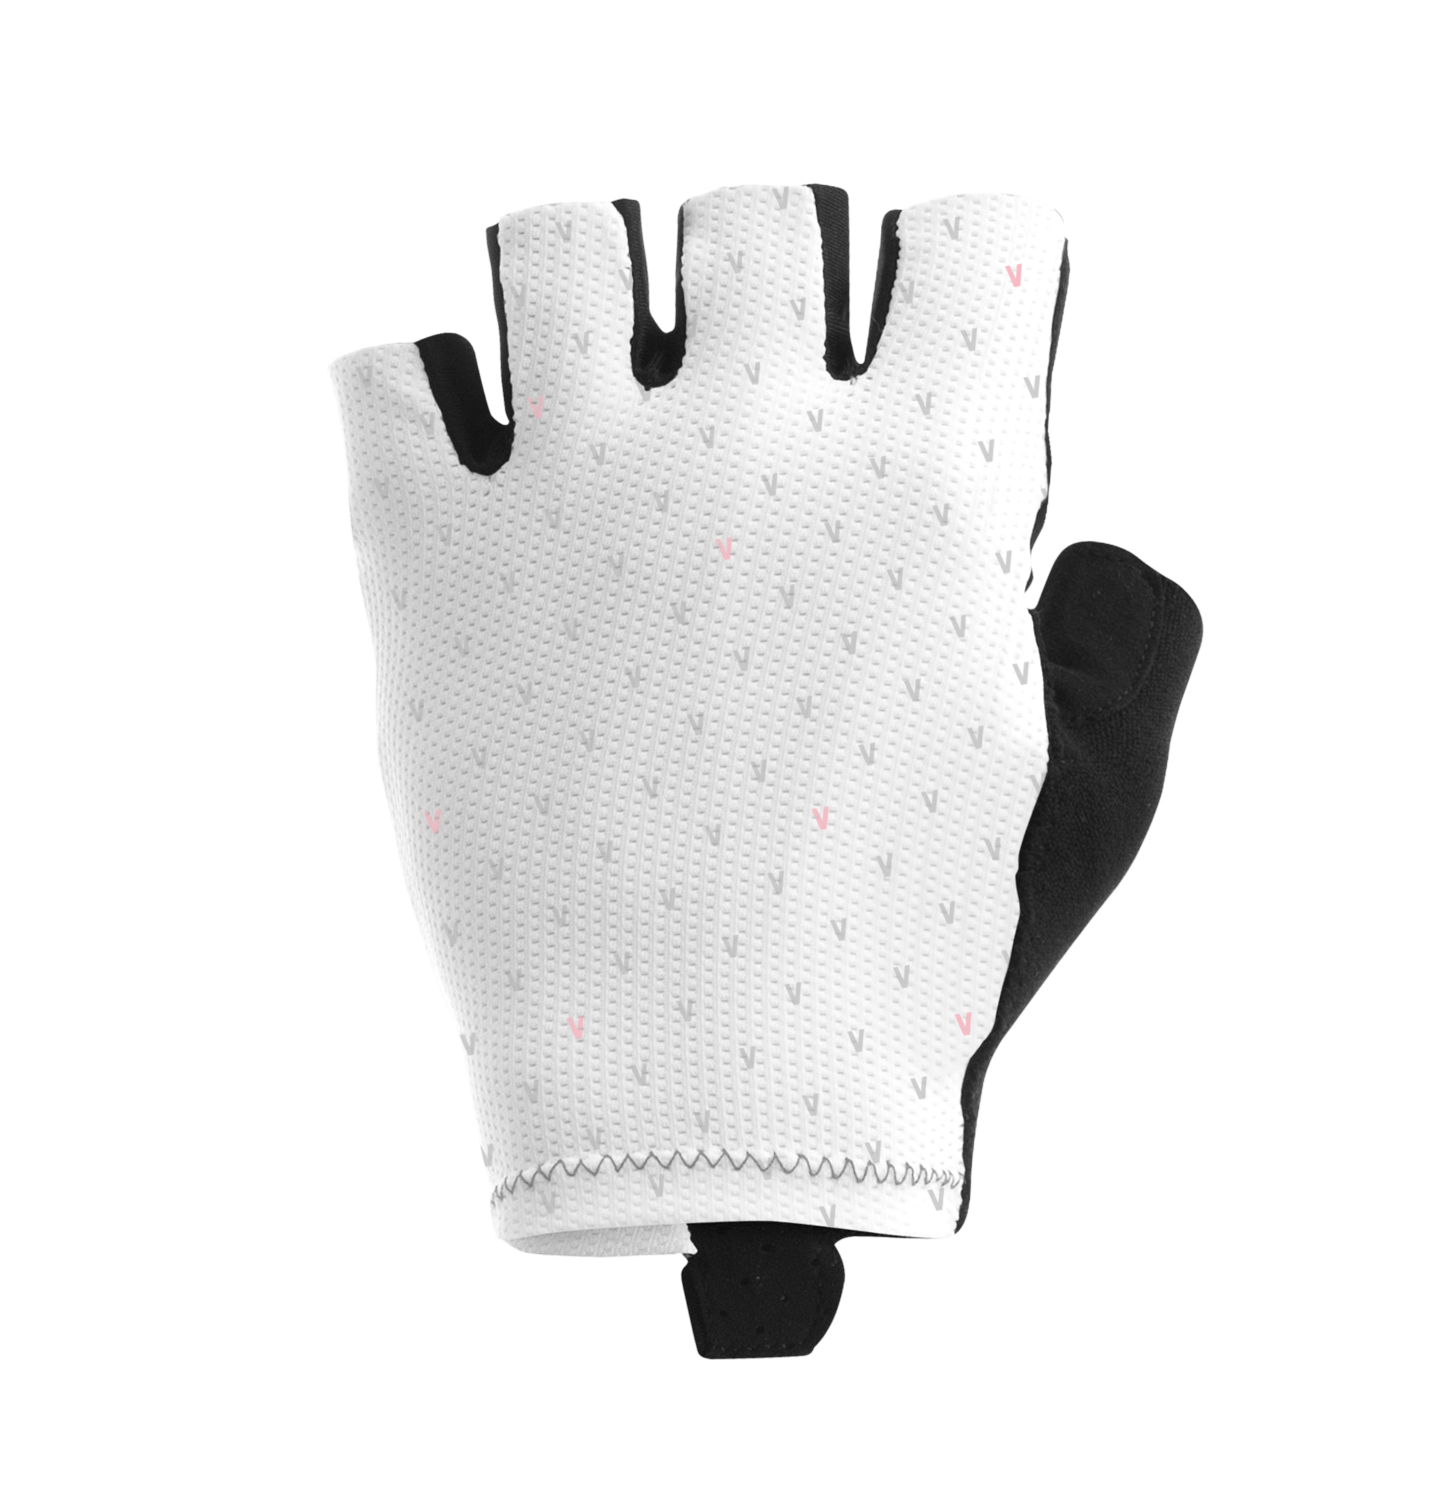 Multi Gloves White